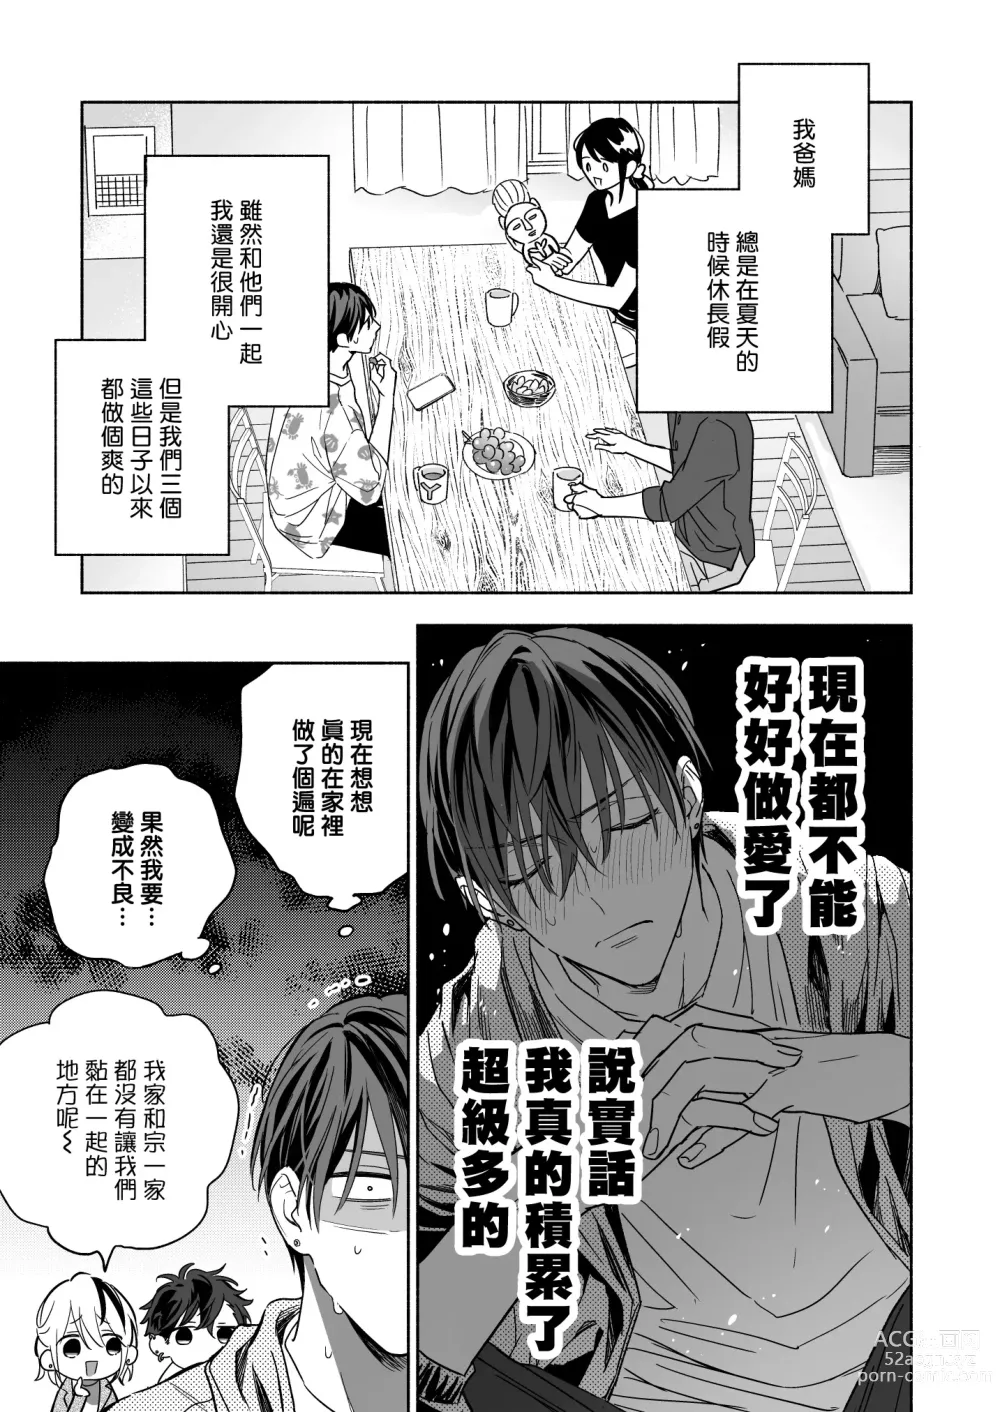 Page 7 of doujinshi 你选上面还是下面? 03